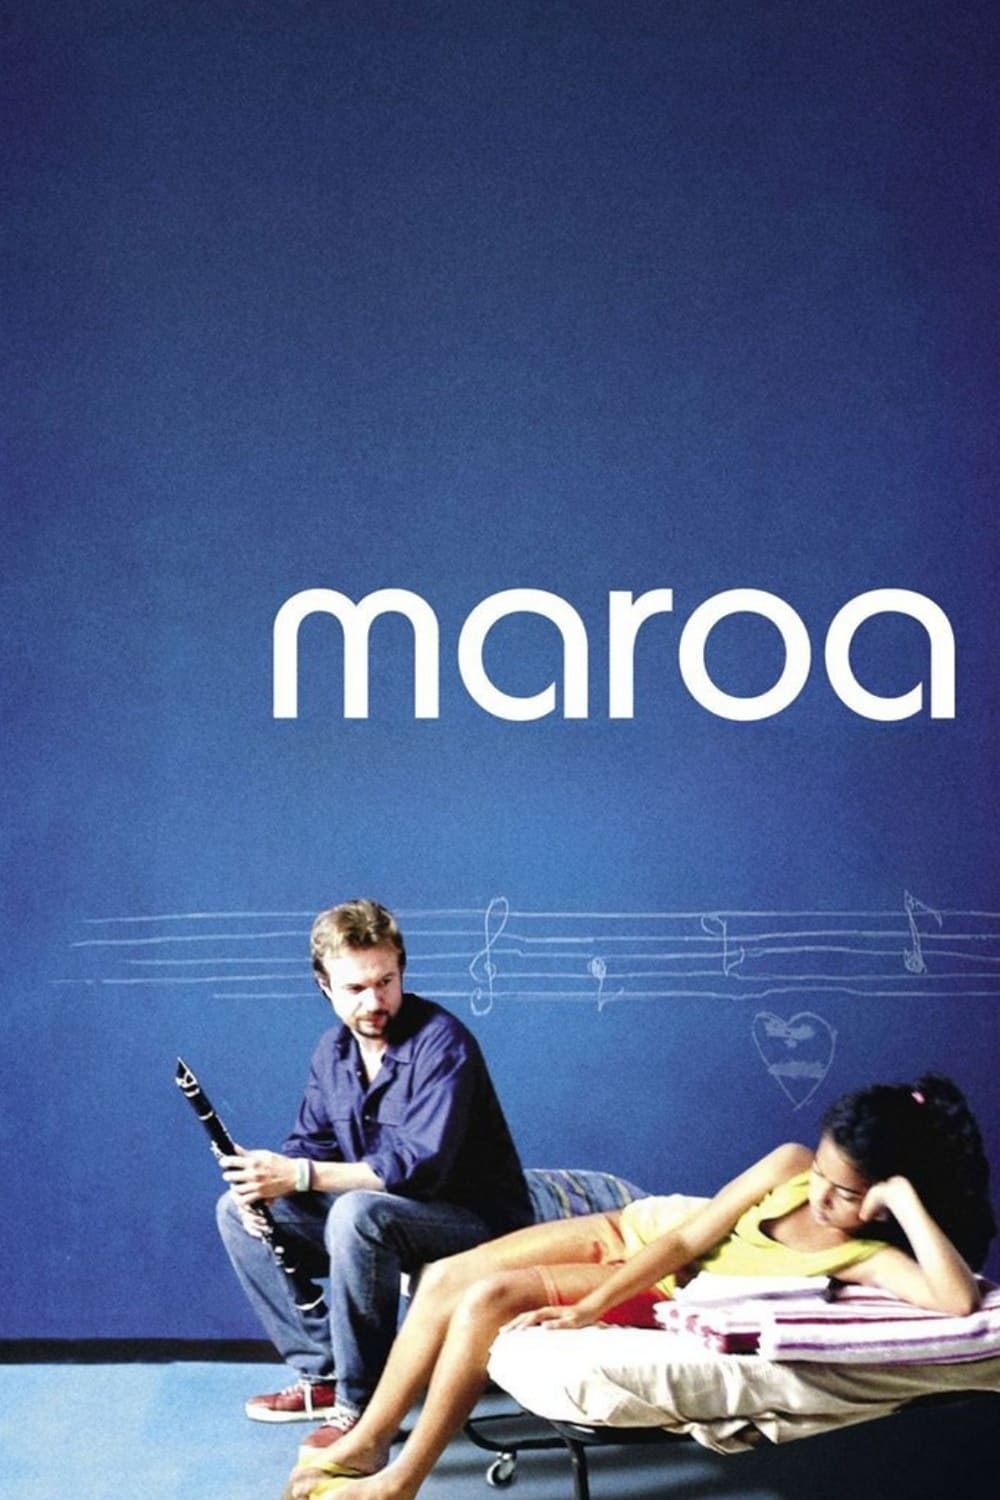 Maroa (2005)